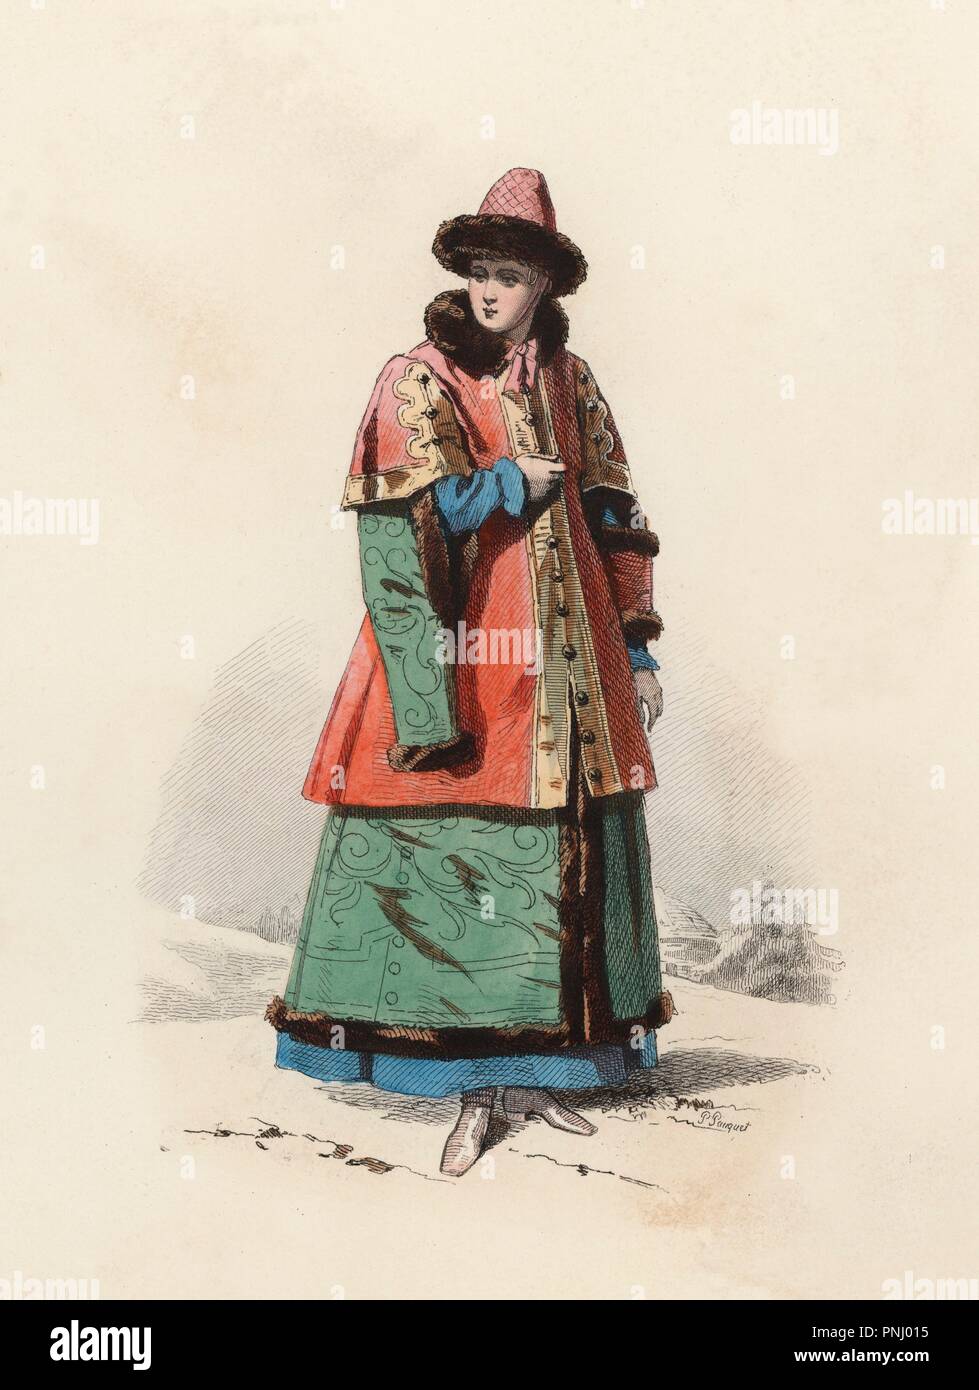 Hija del Boyardo Gran Duque de Moscú, en la Edad Moderna. Grabado en color de 1870. Stock Photo